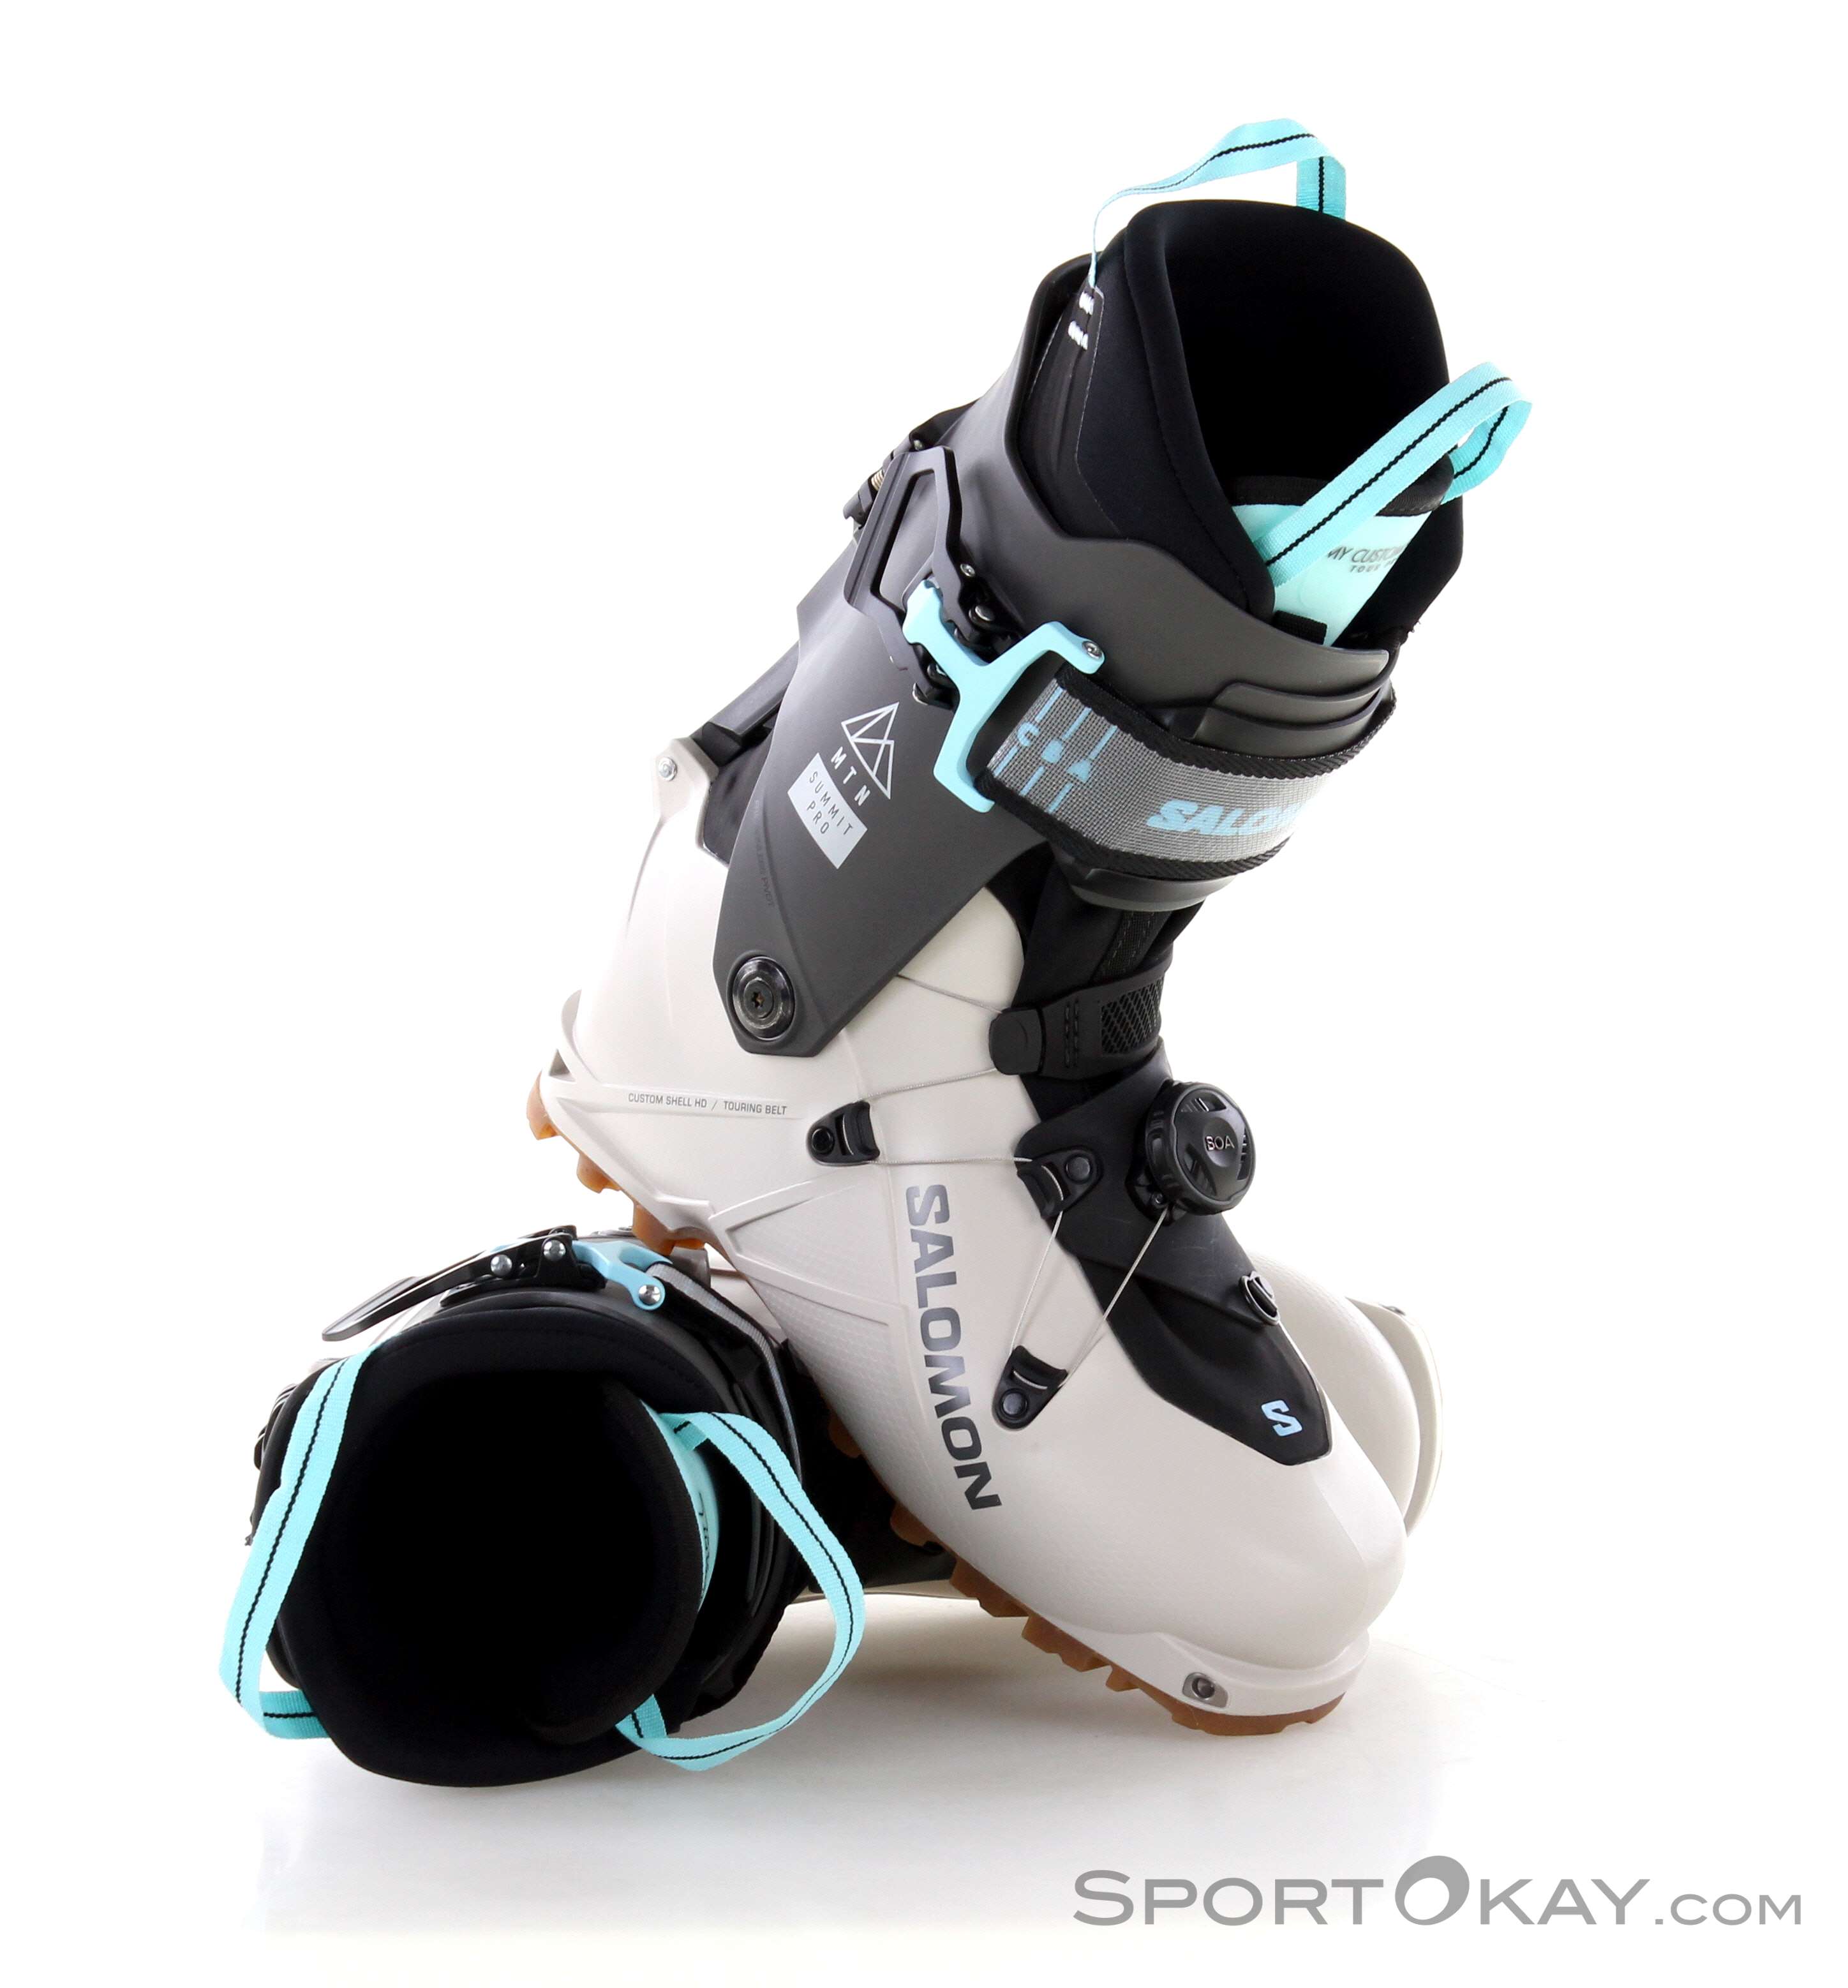 2 Pcs Accessoires de ski Snowboard Fixation Strap Skates Chaussures Boucle  Strap Patins à glace Strapes Inline Roller Strap Vis